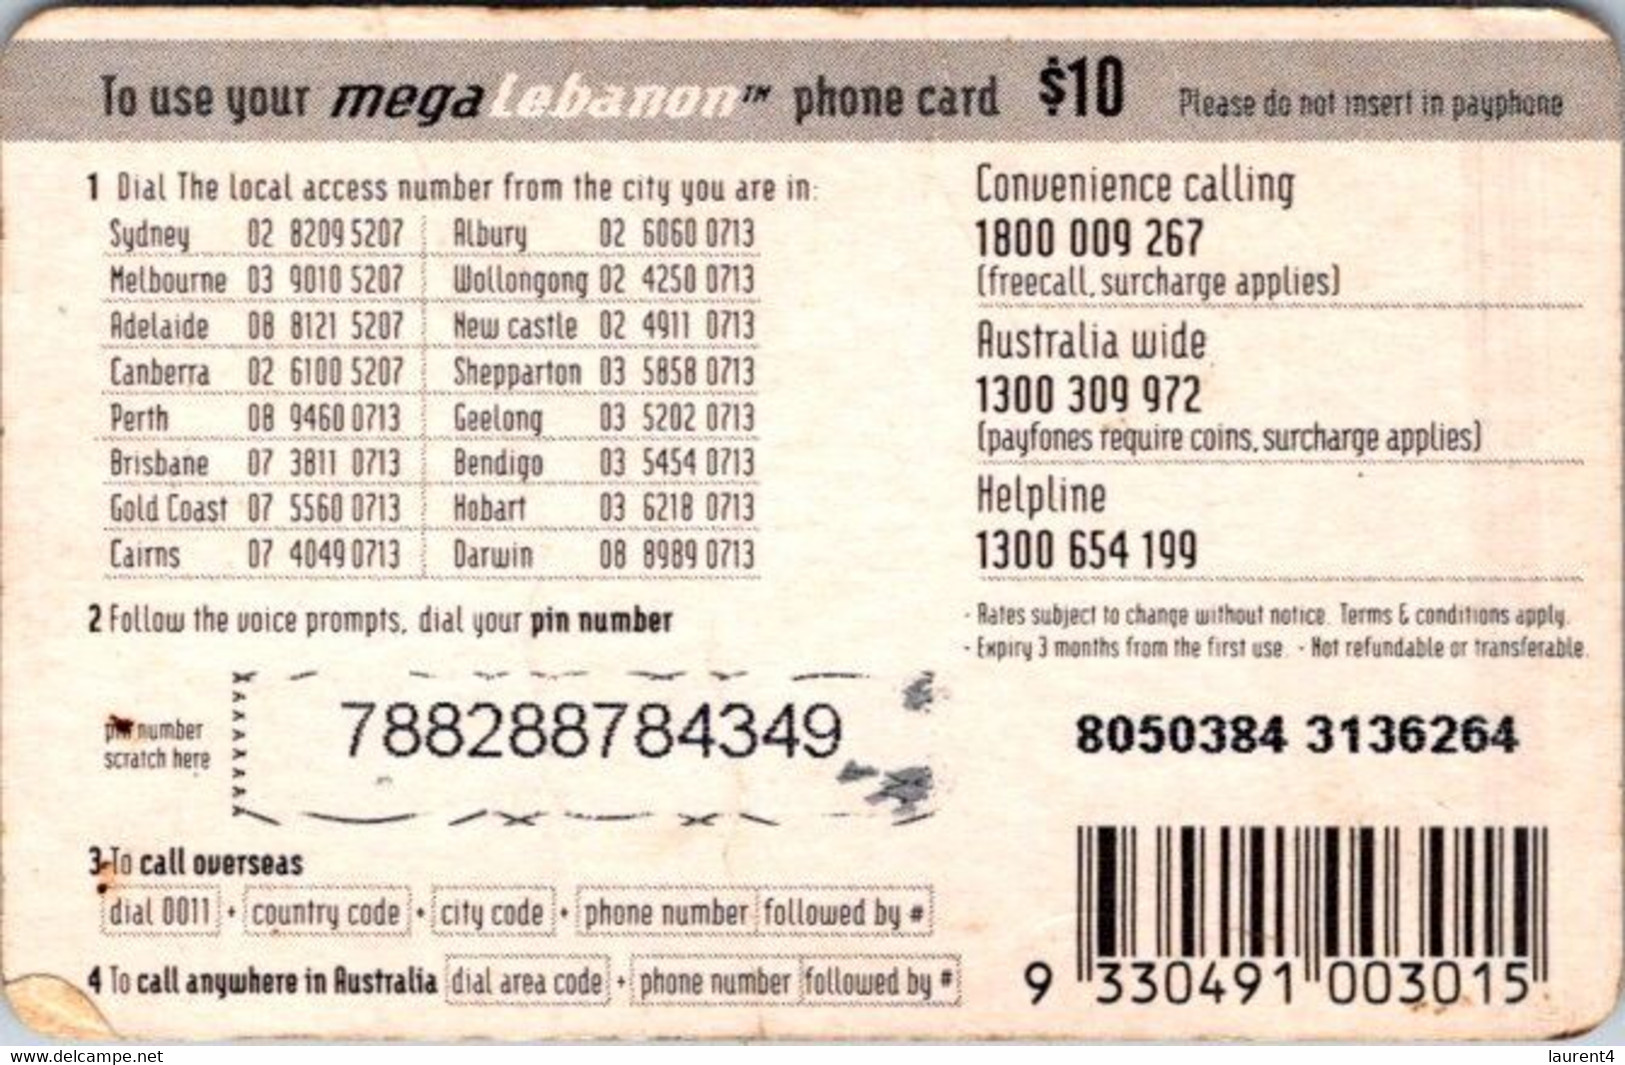 (3-10-2021 F) Phonecard -  Liban - (1 Phonecard) MegaLebanon $ 10.00 - Libanon